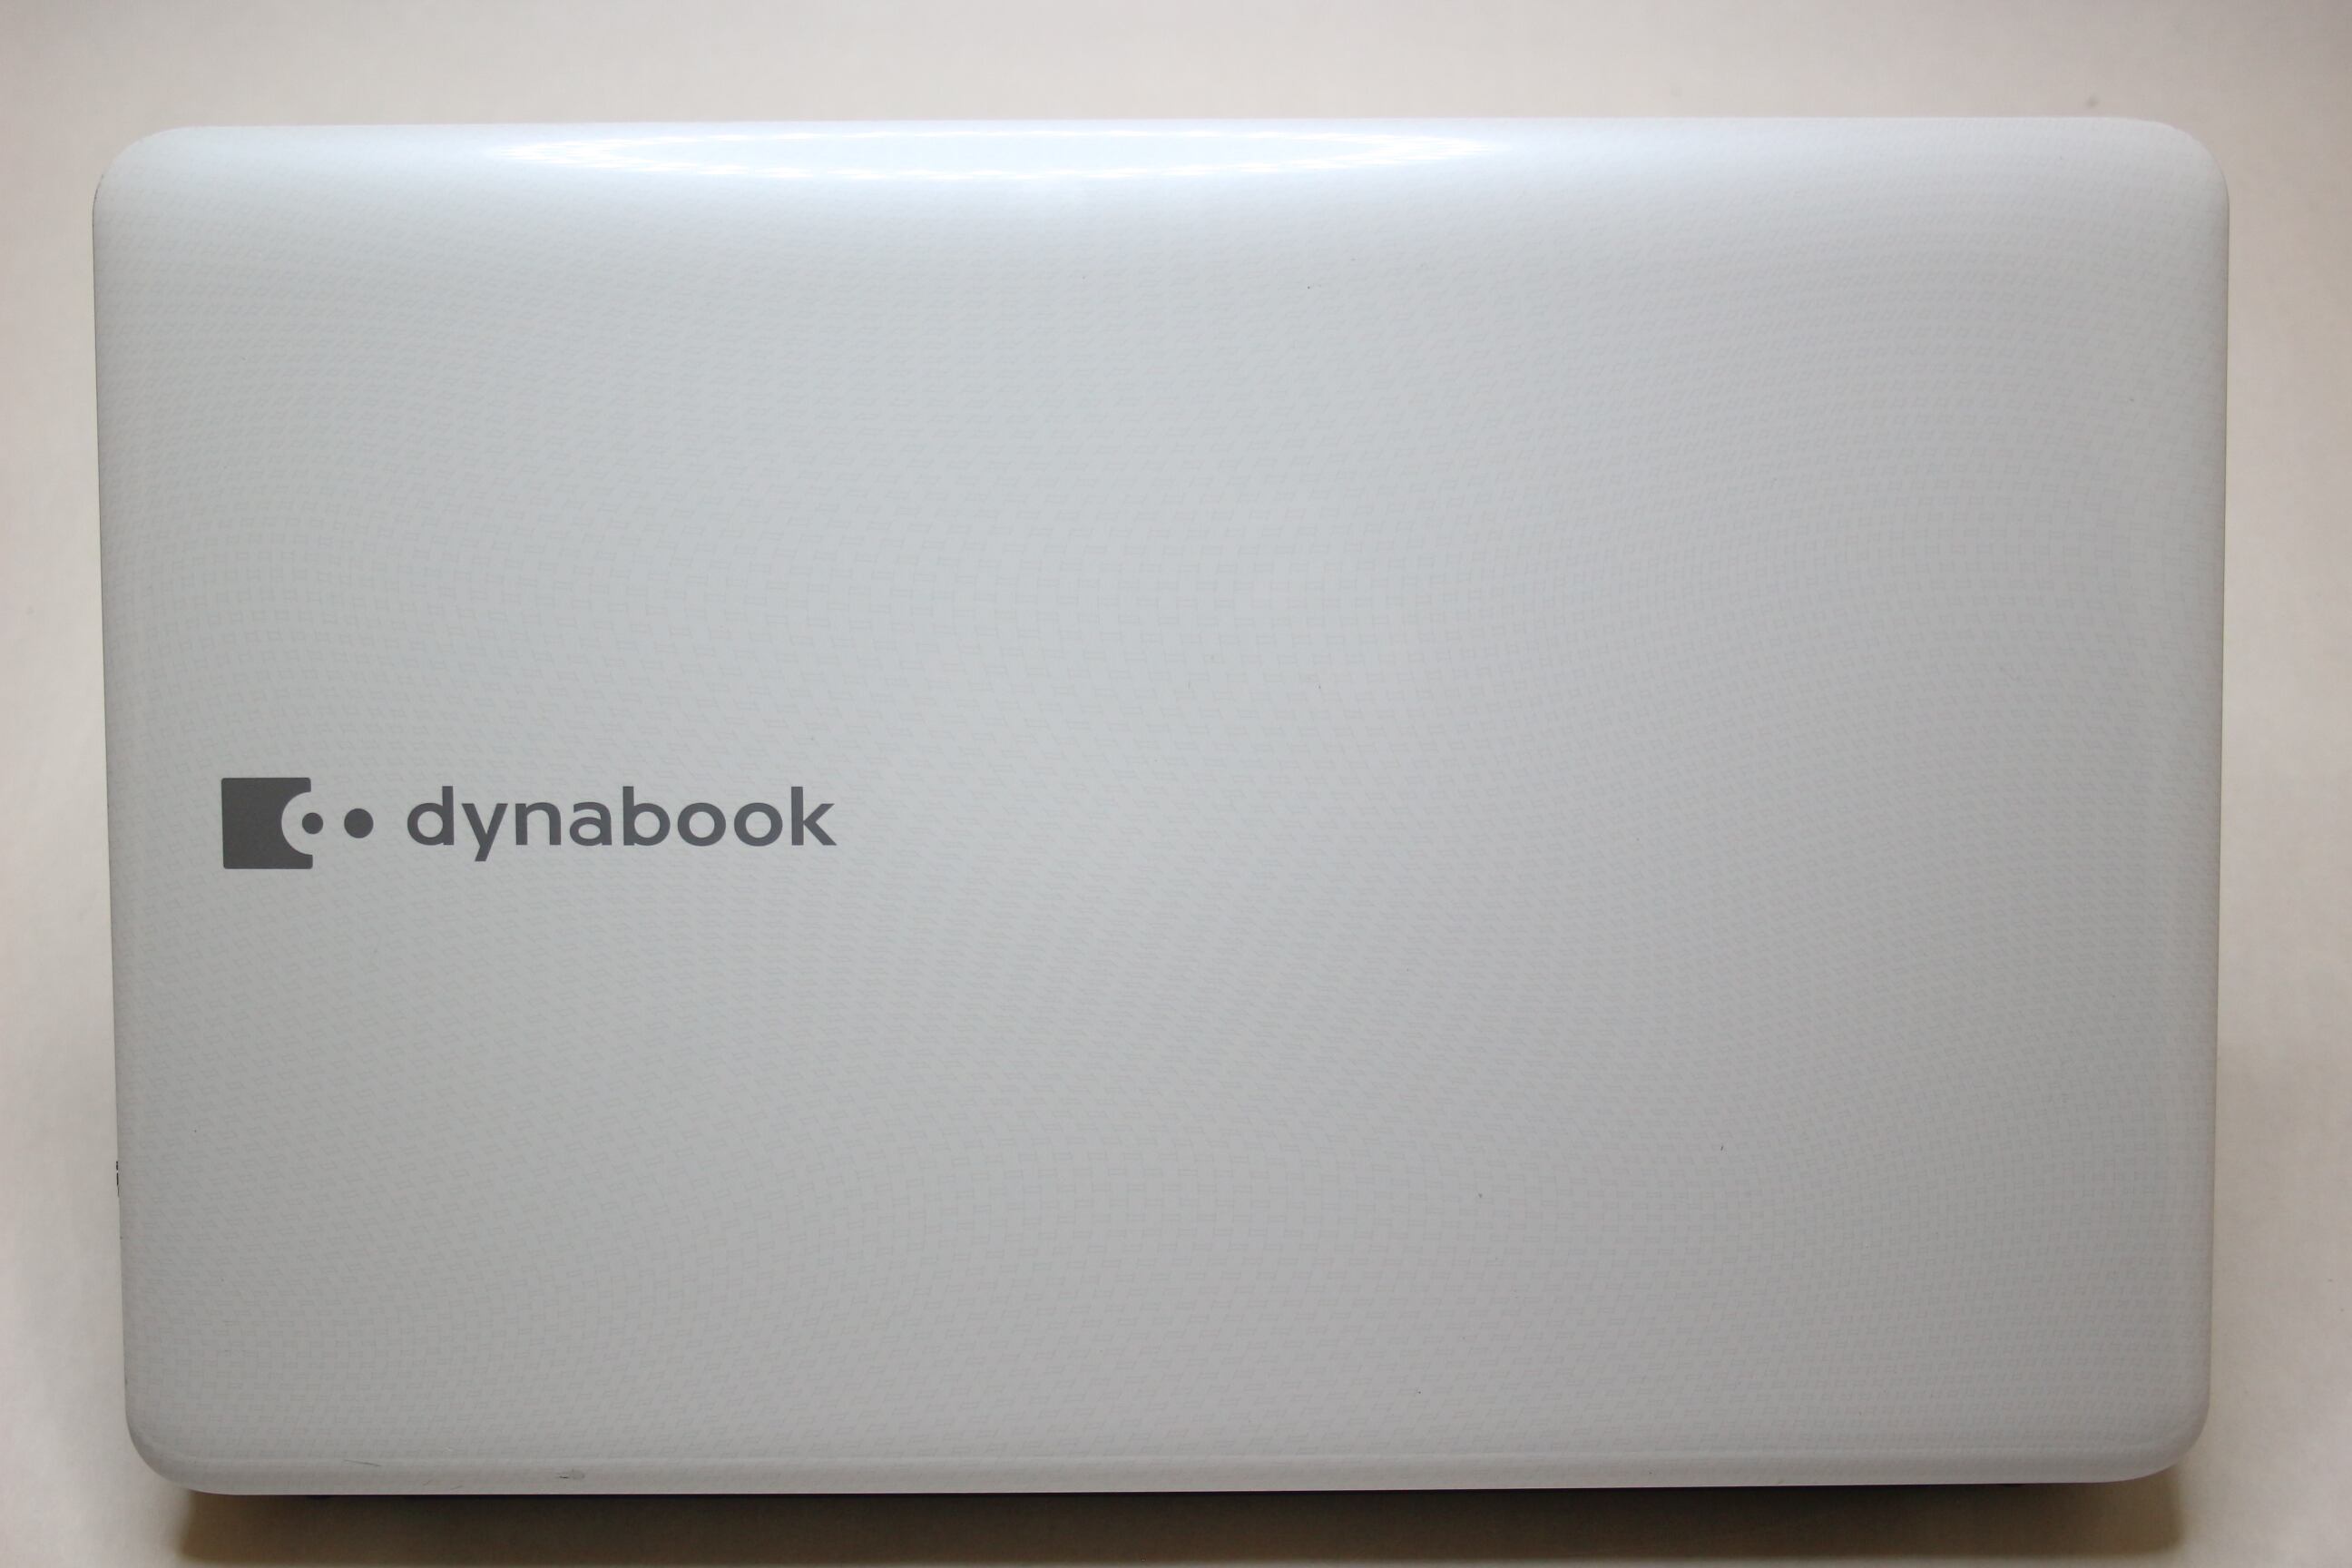 ♪ ♪ 月末特価♪ ♪  dynabook Win10 i5 320GB 4GB